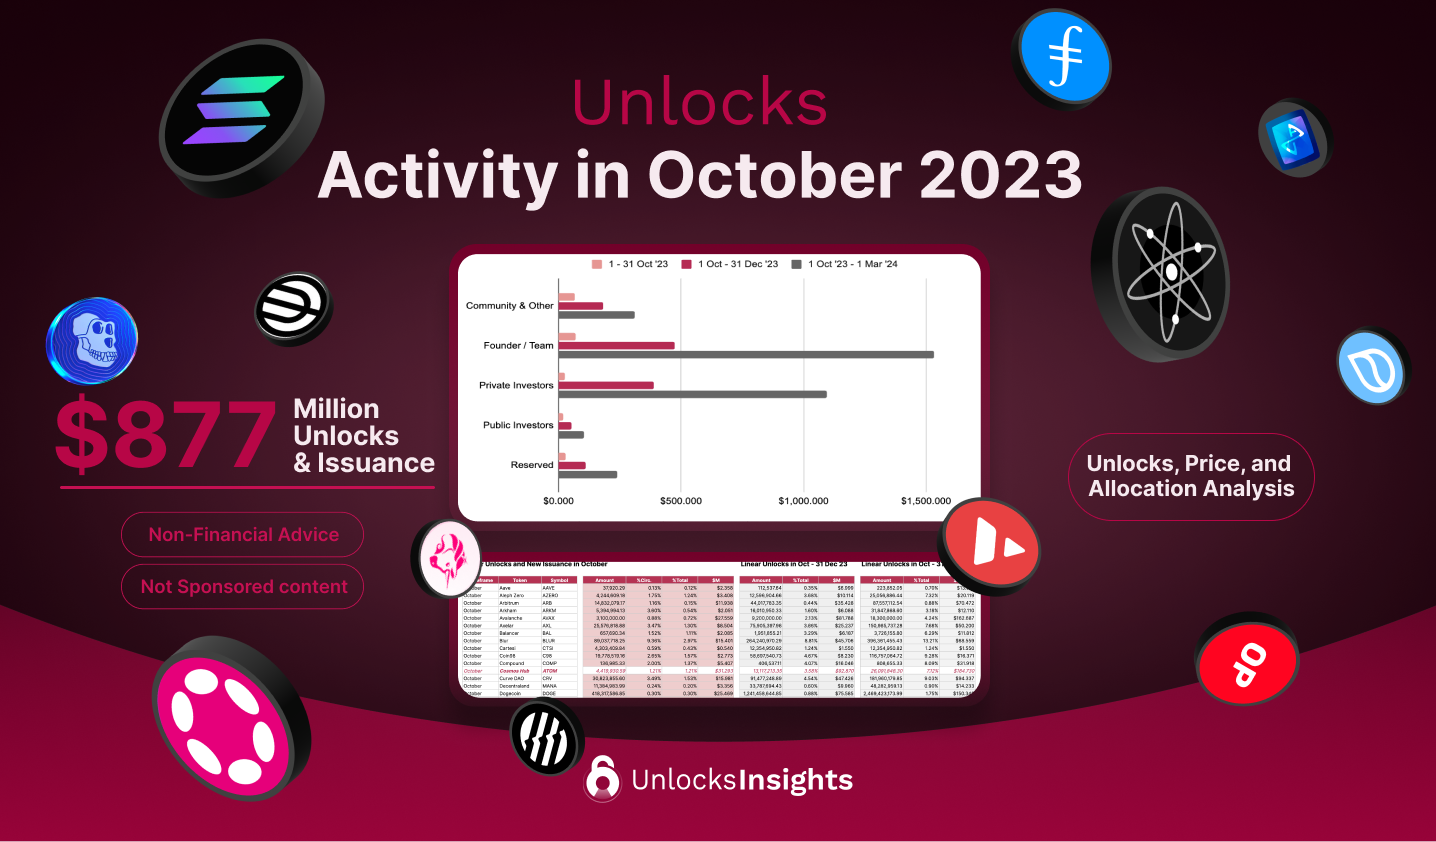 Unlocks Activity in October 2023